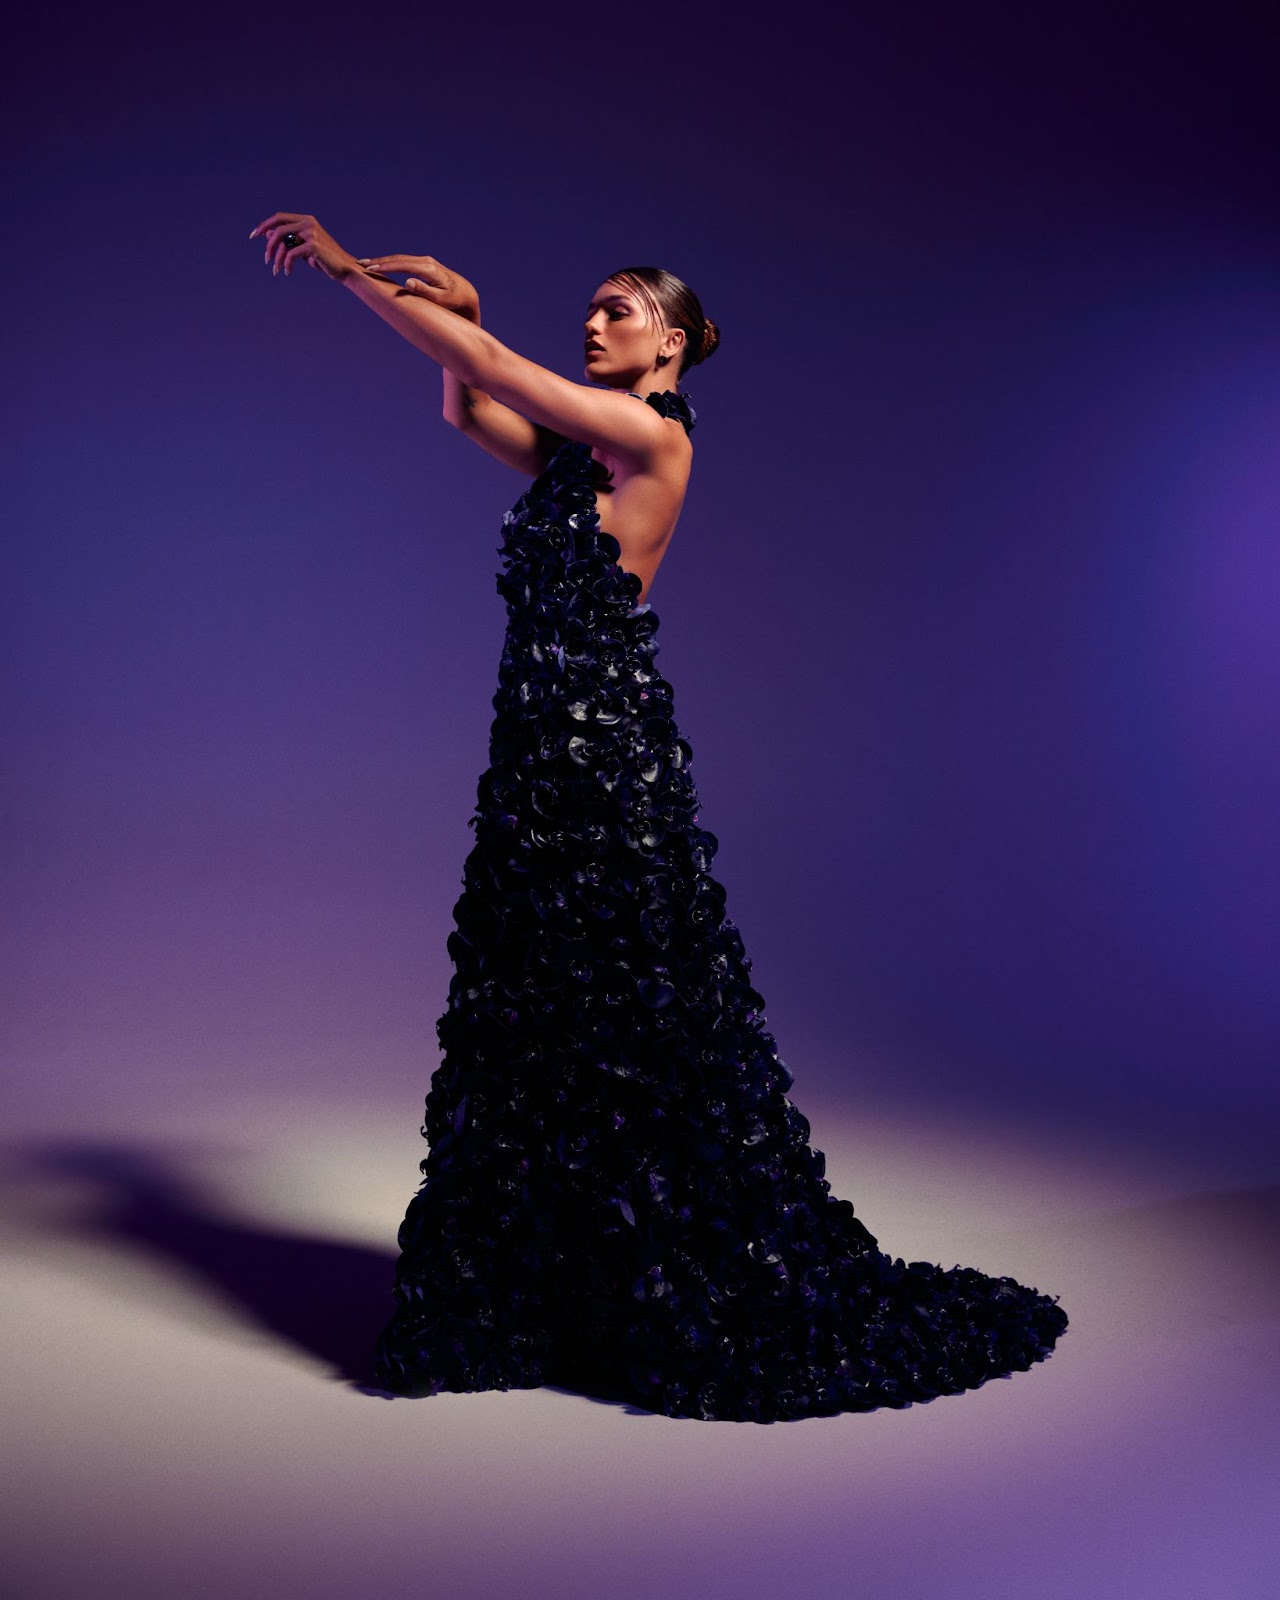 Você está visualizando atualmente Rafa Kalimann usa vestido exclusivo com mais de 1.600 orquídeas negras em 3D em ensaio fotográfico